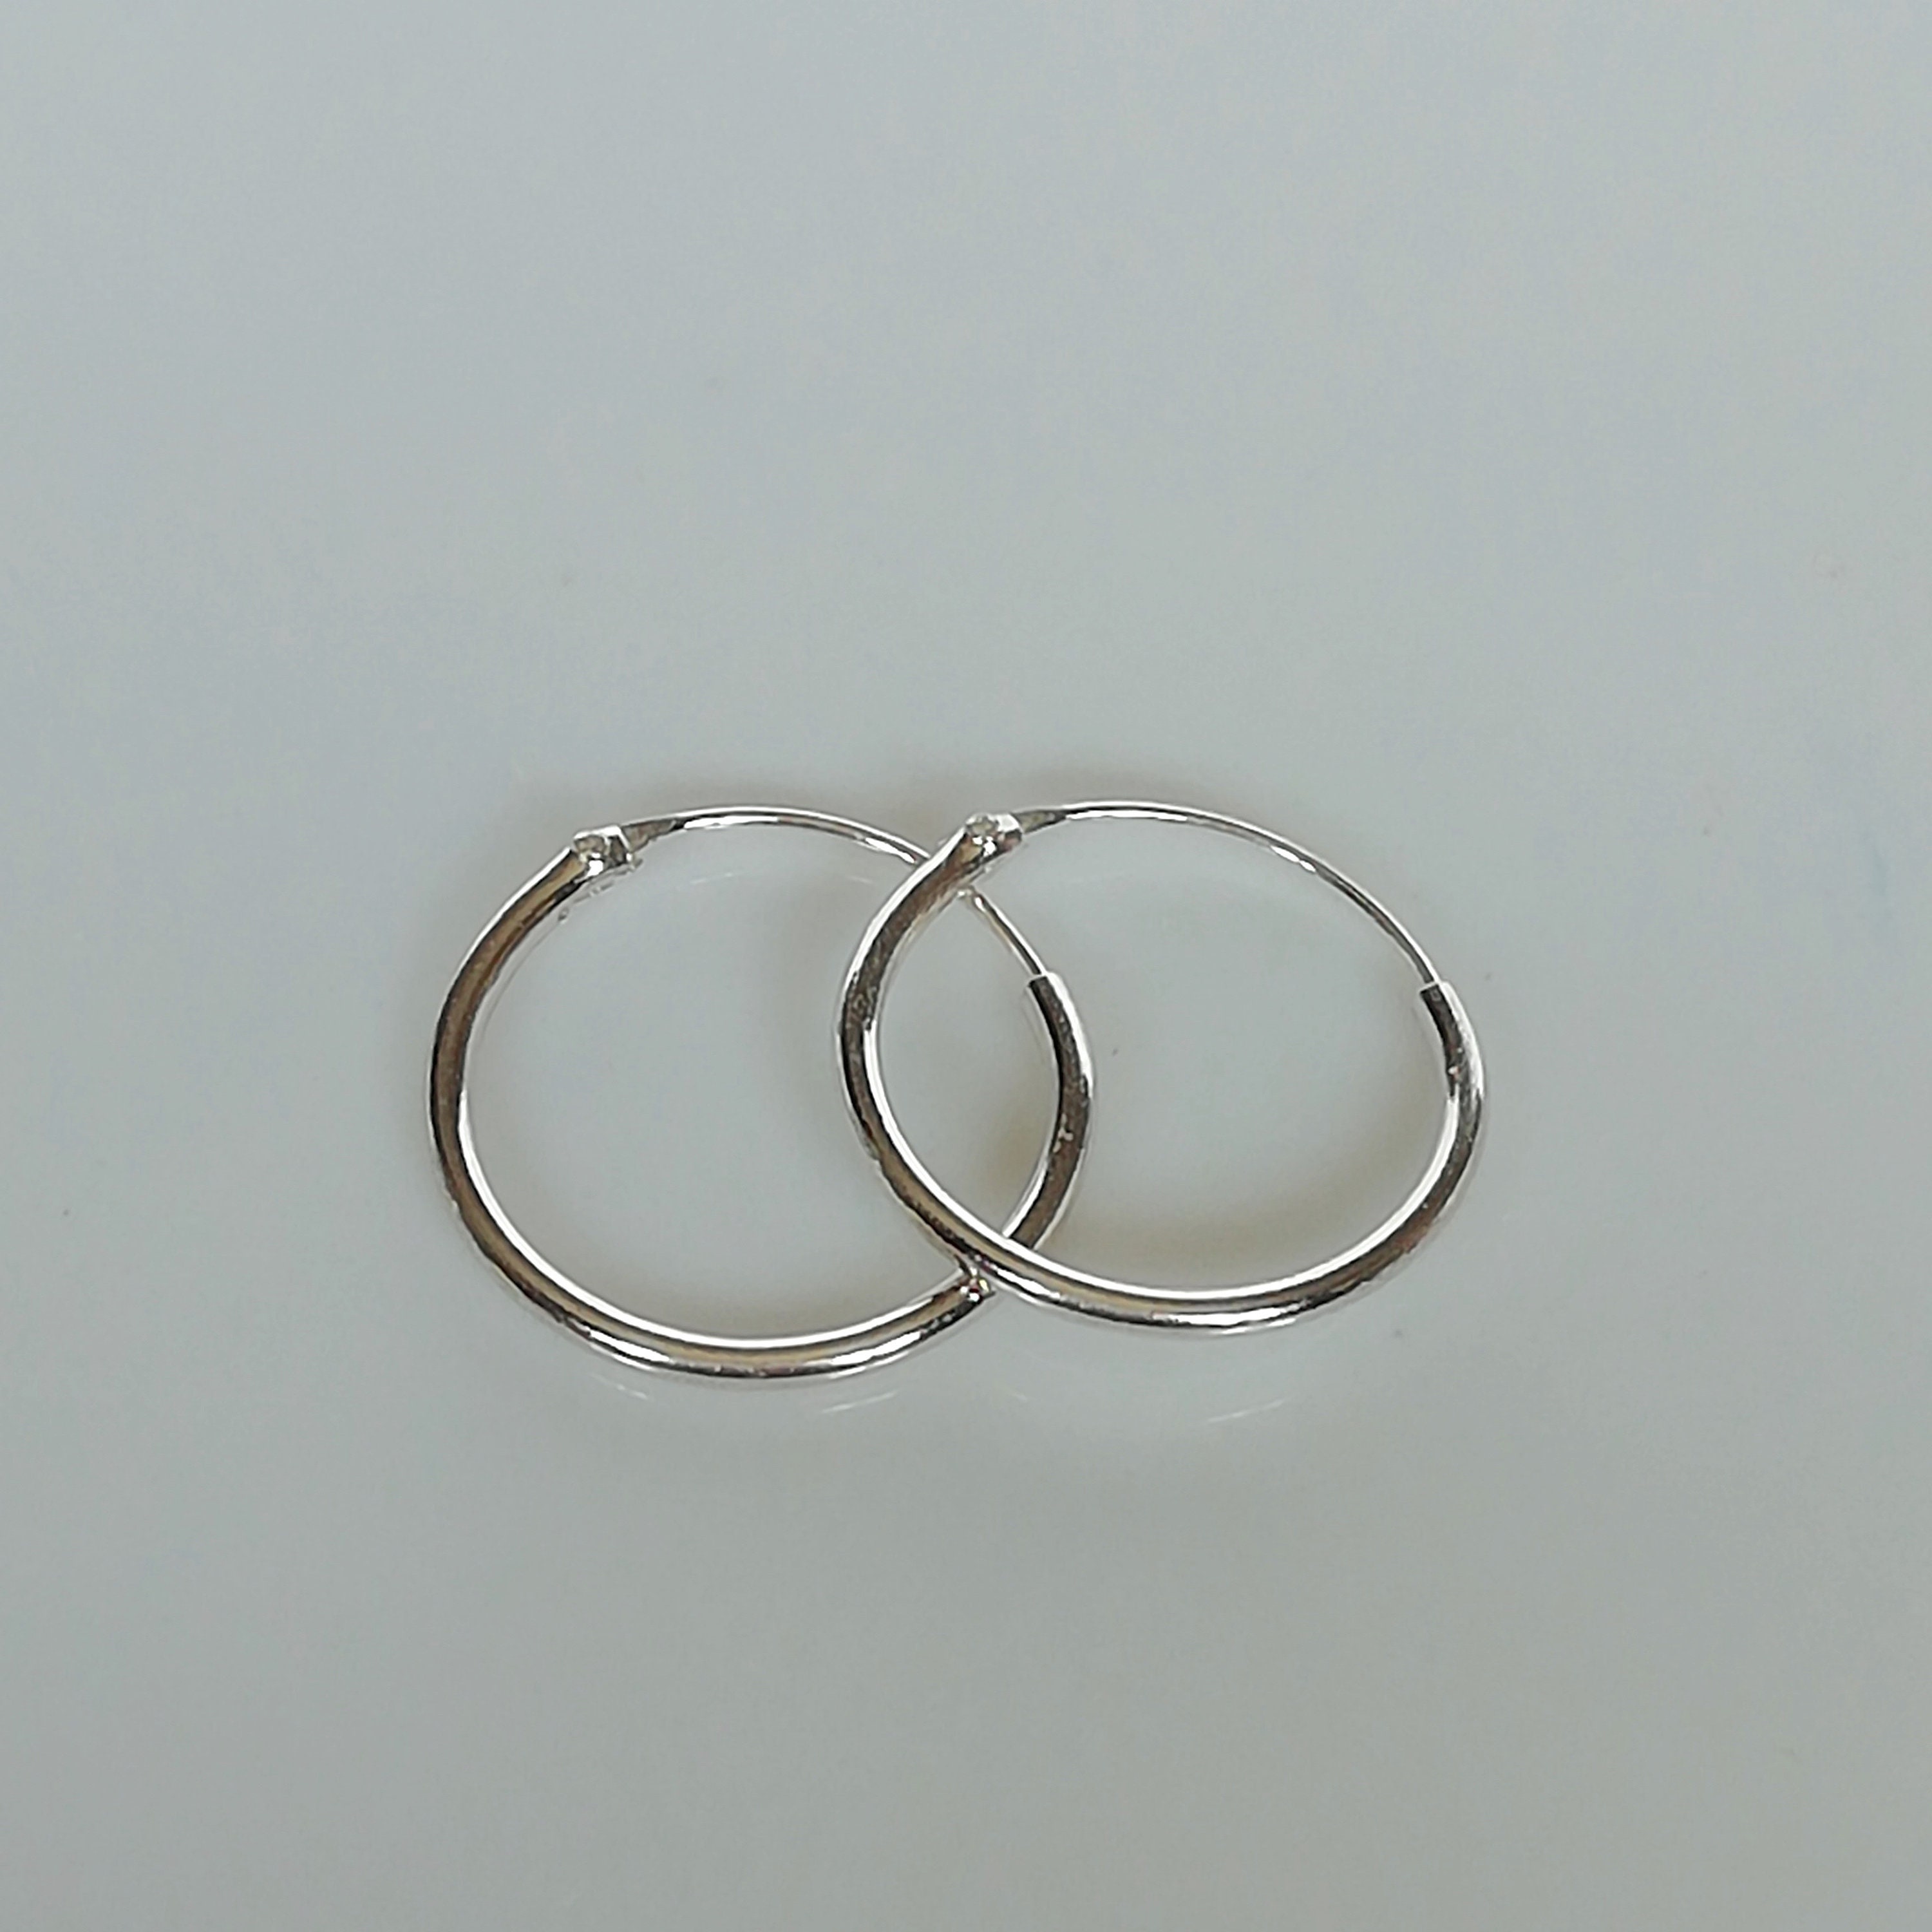 14mm silver hoops 18 gauge silver hoop earrings Silver | Etsy